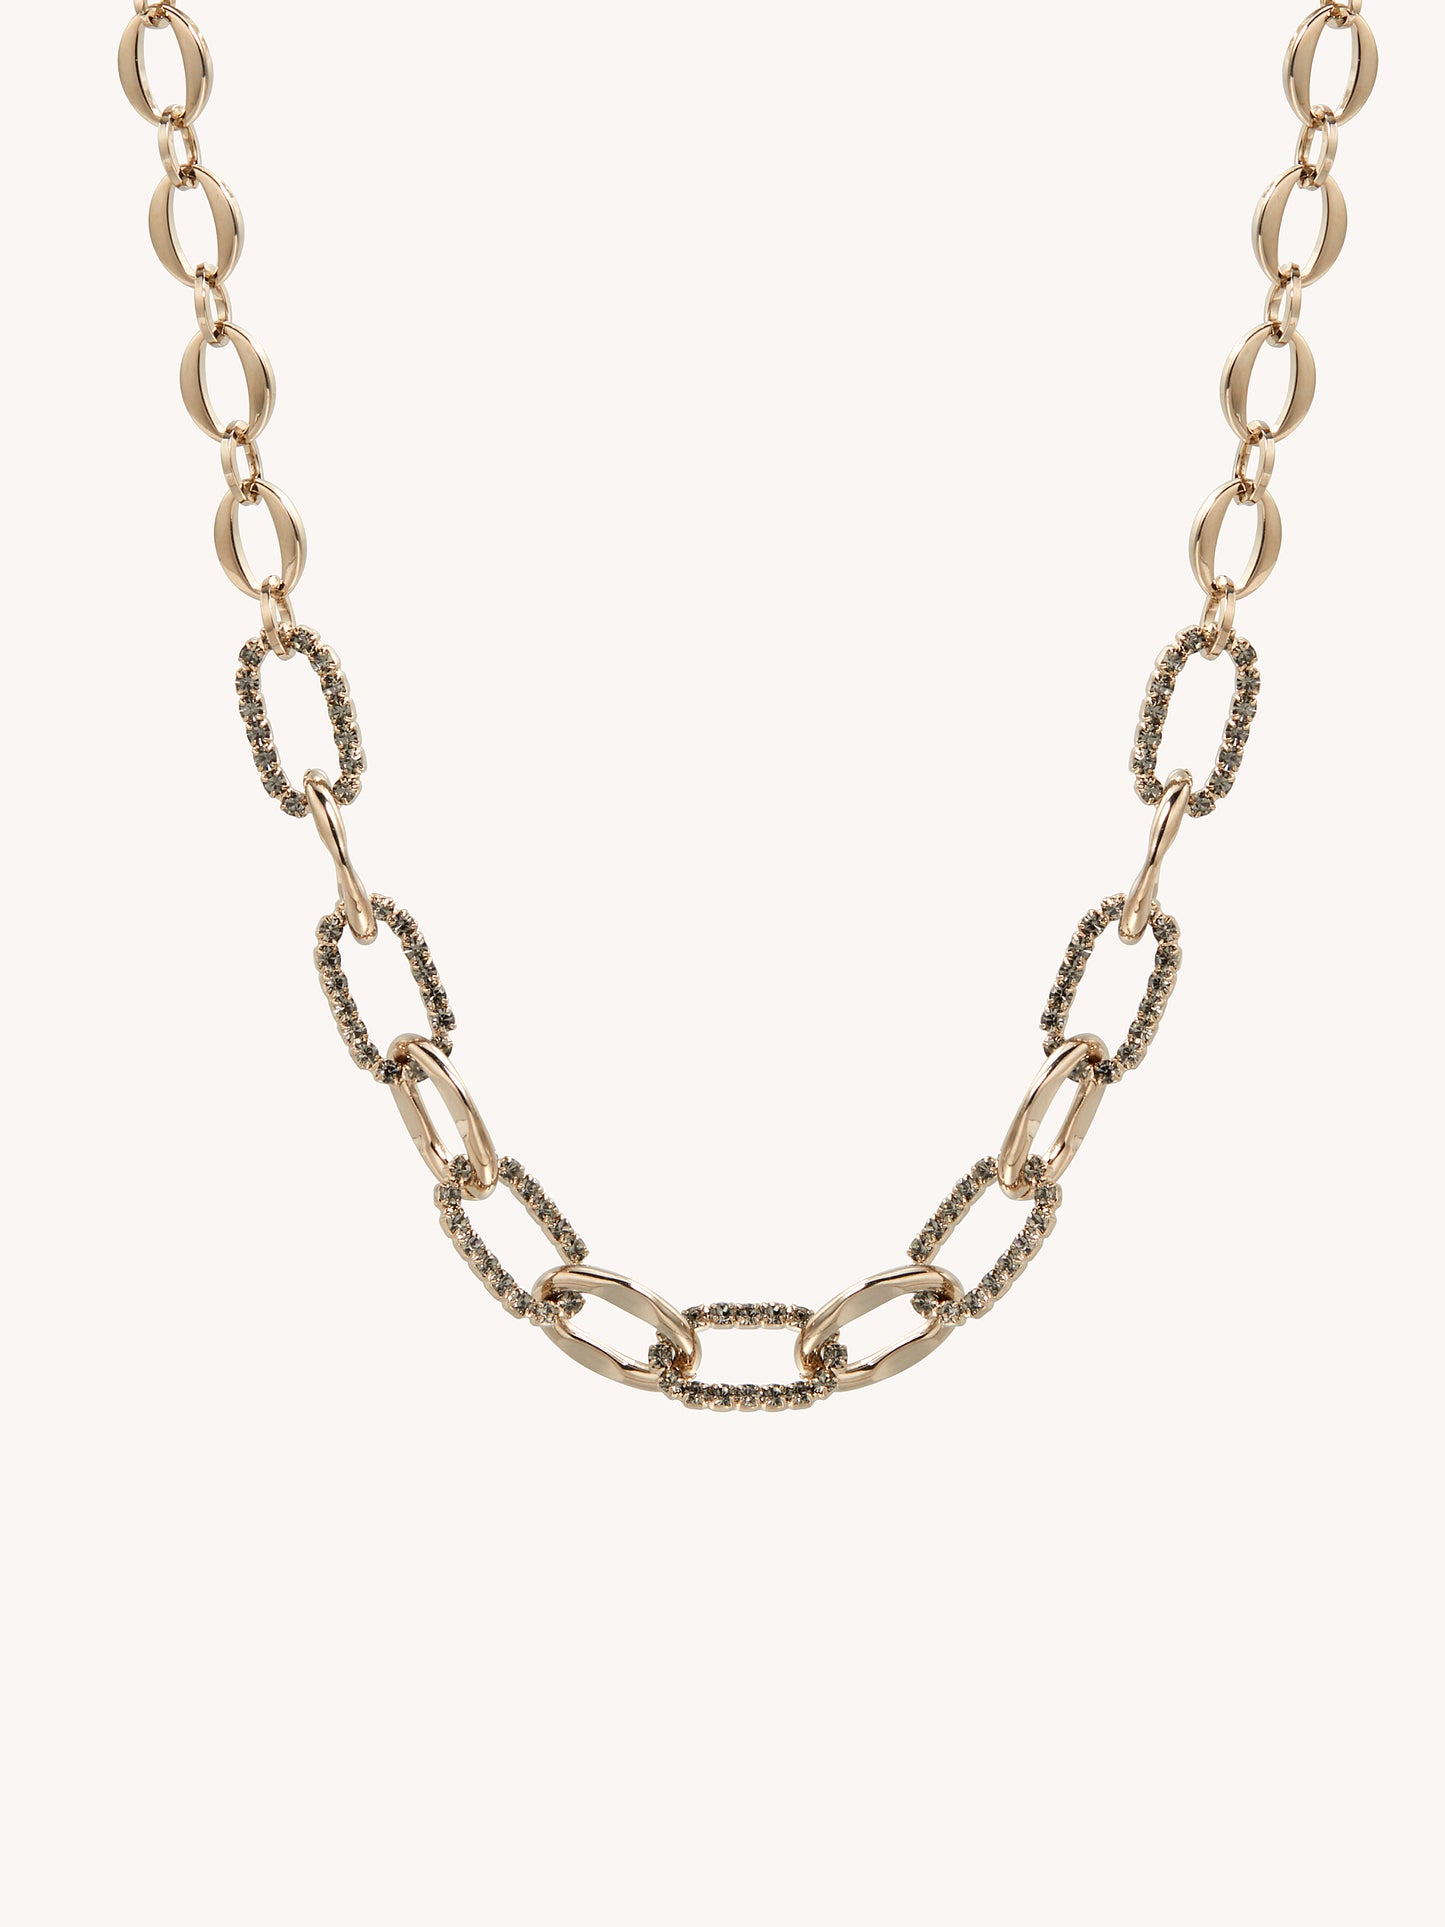 Singular Chain Necklace